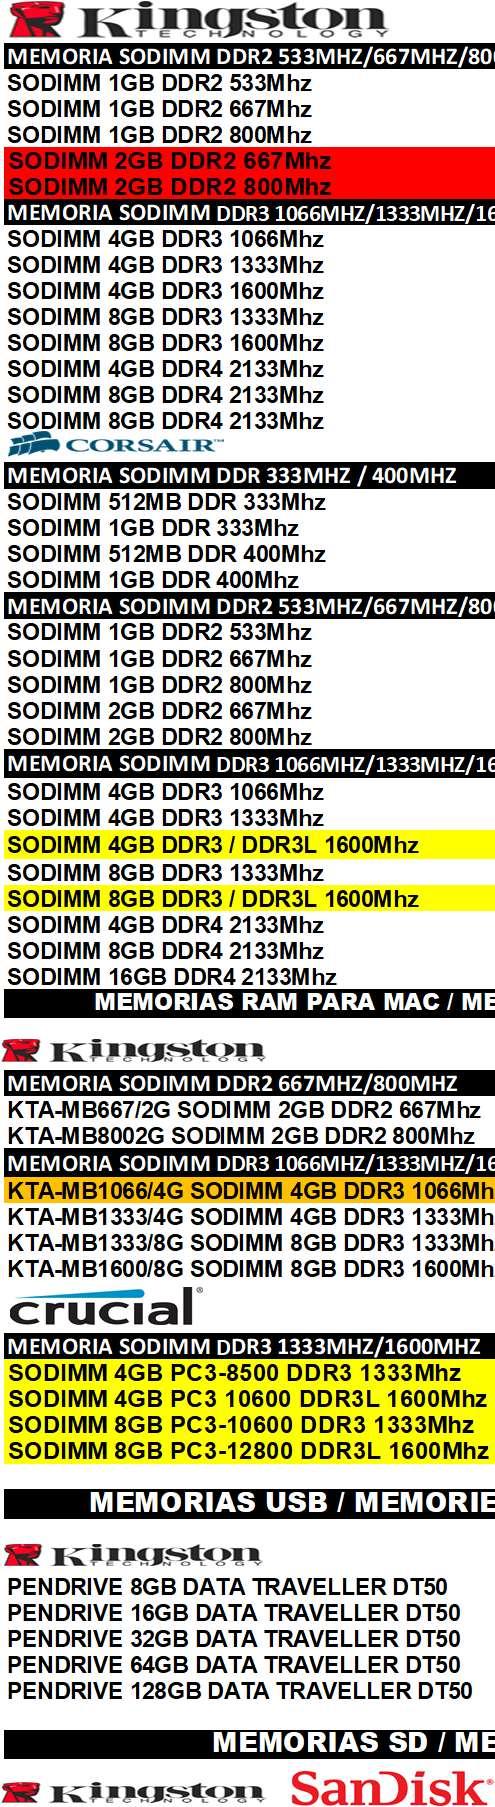 MEMORIAS RAM PORTATIL / MEMORIES RAM PORTATIL MEMORIAS SD / MEMORIES SD MEMORIA SODIMM DDR2 533MHZ/667MHZ/800MHZ MEMORIA MICRO SD CLASE 10 IVA+CANON SODIMM 1GB DDR2 533Mhz 9,90 MICRO SDXC 64GB +